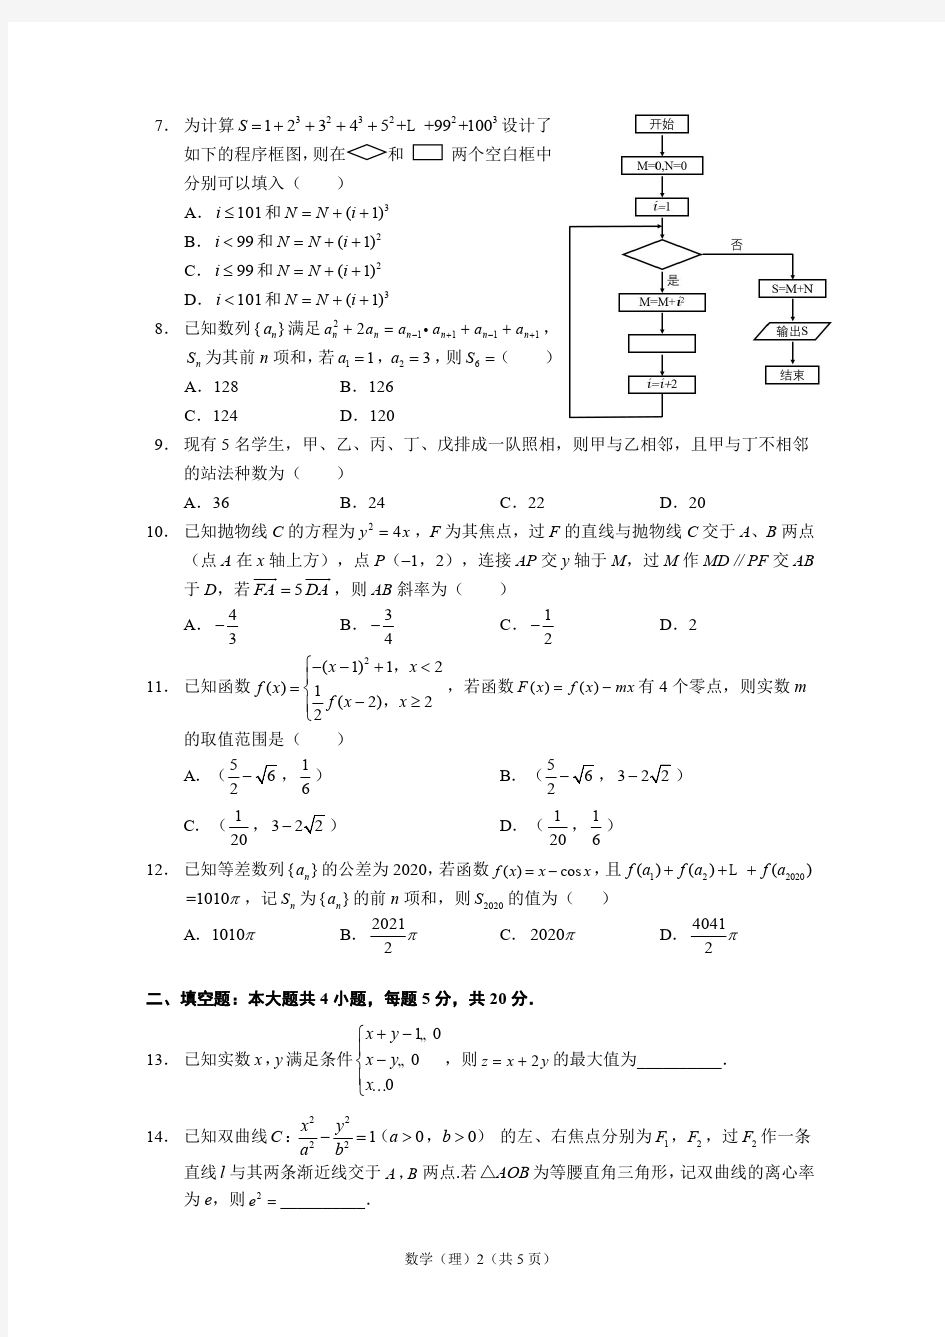 【理数】2020年哈三中普通高考模拟试卷(一)理科数学_20200331_153154